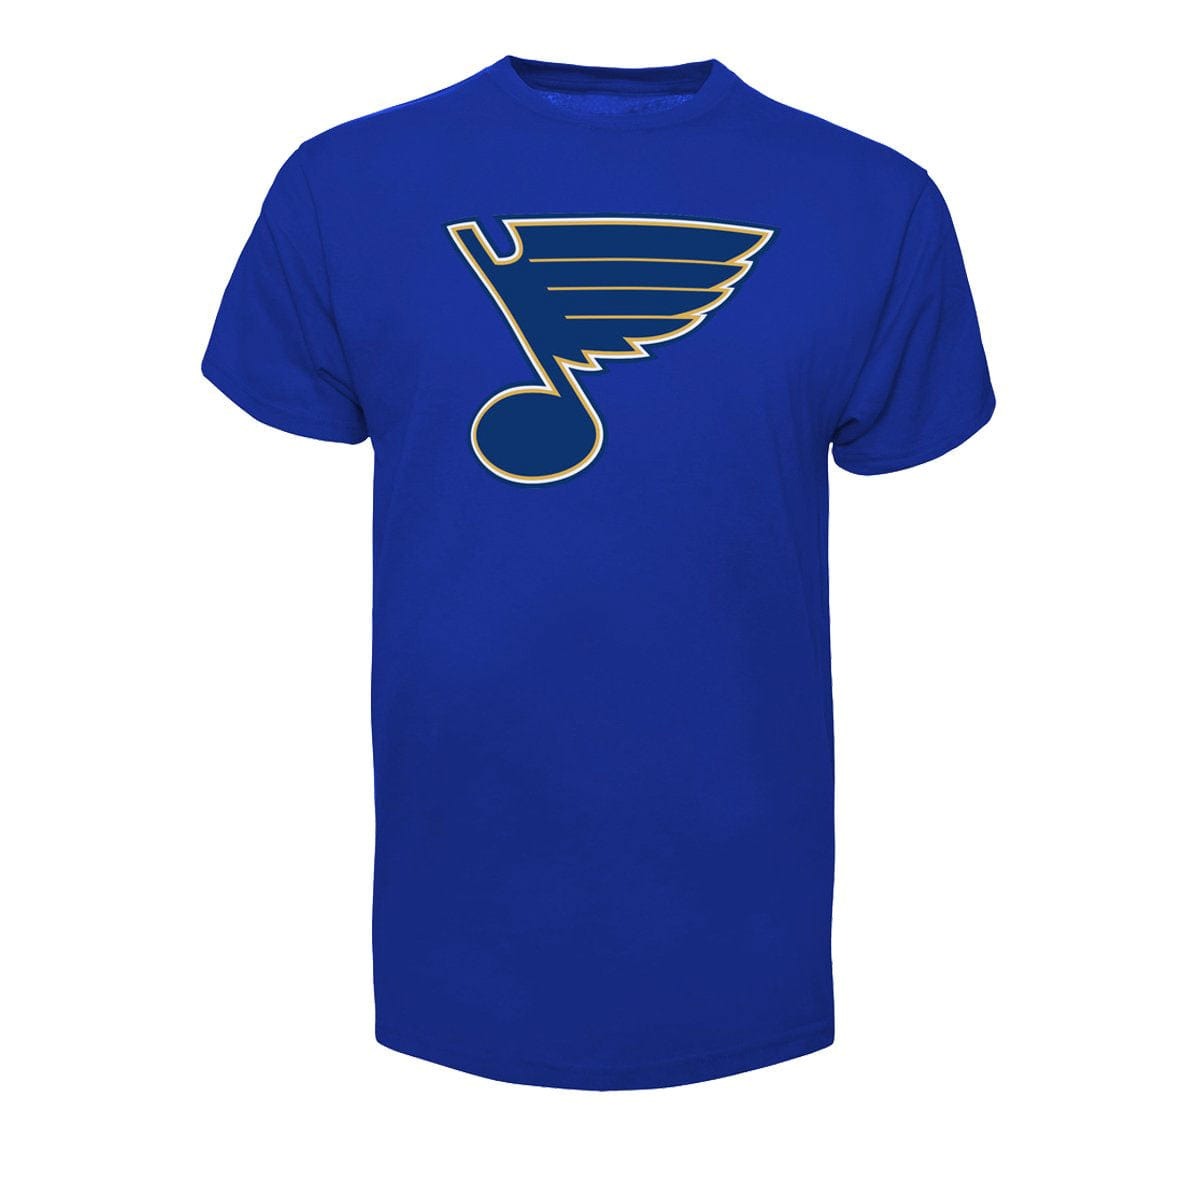 http://www.thehockeyshop.com/cdn/shop/products/47-brand-shirts-st-louis-blues-47-brand-fan-tee-shirt-royal-xl-28744443101250.jpg?v=1691096331